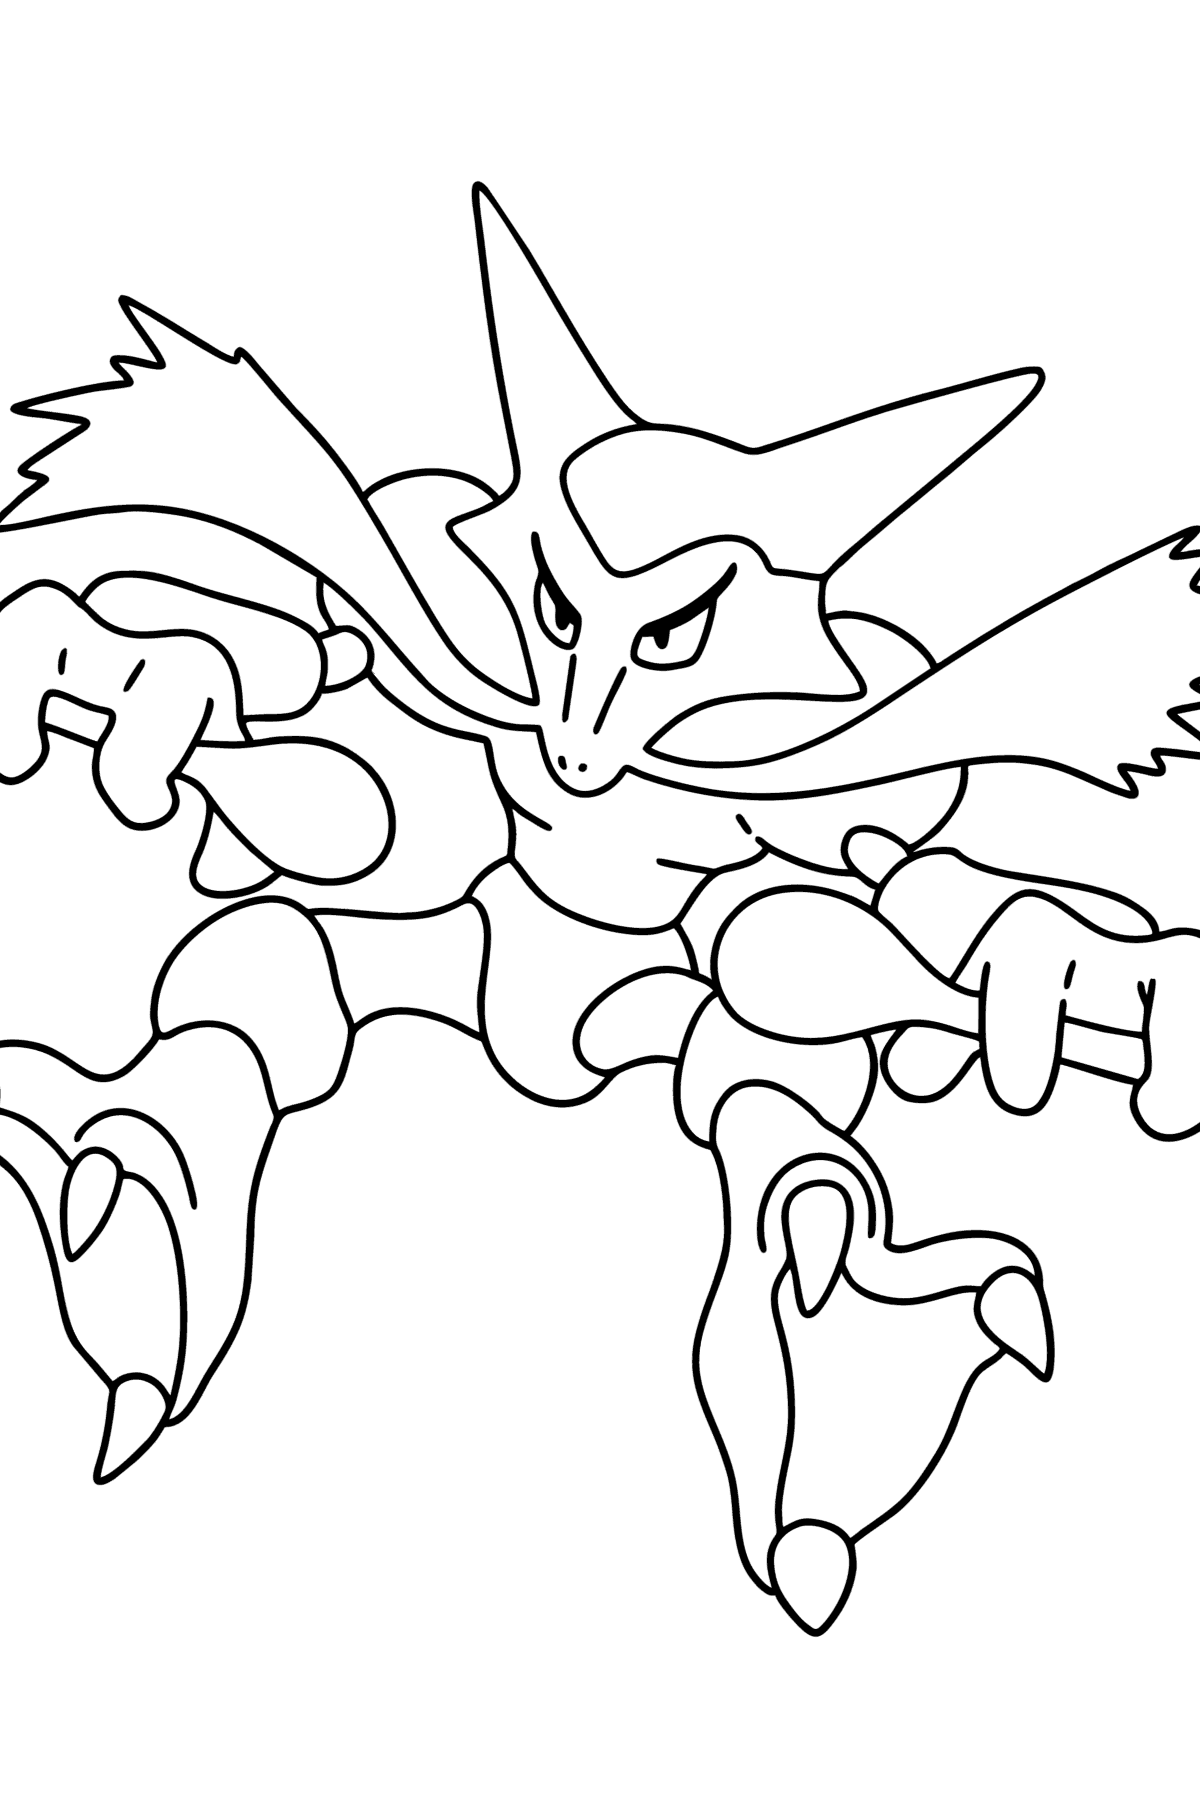 Раскраска Pokemon Go Alakazam - Картинки для Детей